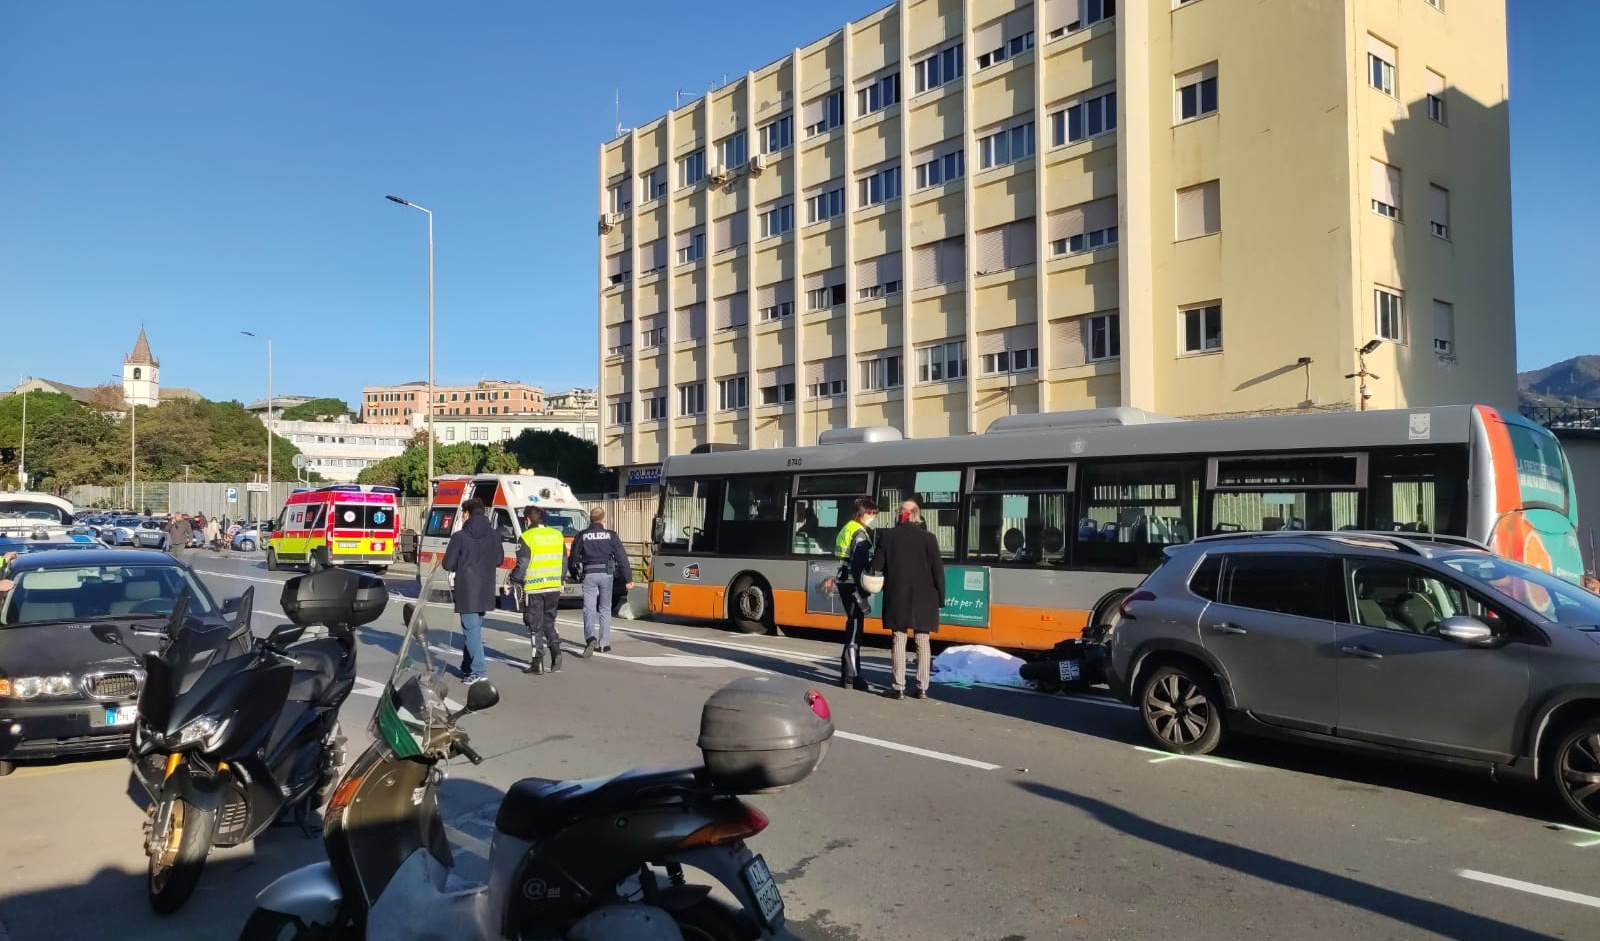 Donna travolta da un bus a Genova, ciclista denunciato per fuga ed omicidio colposo